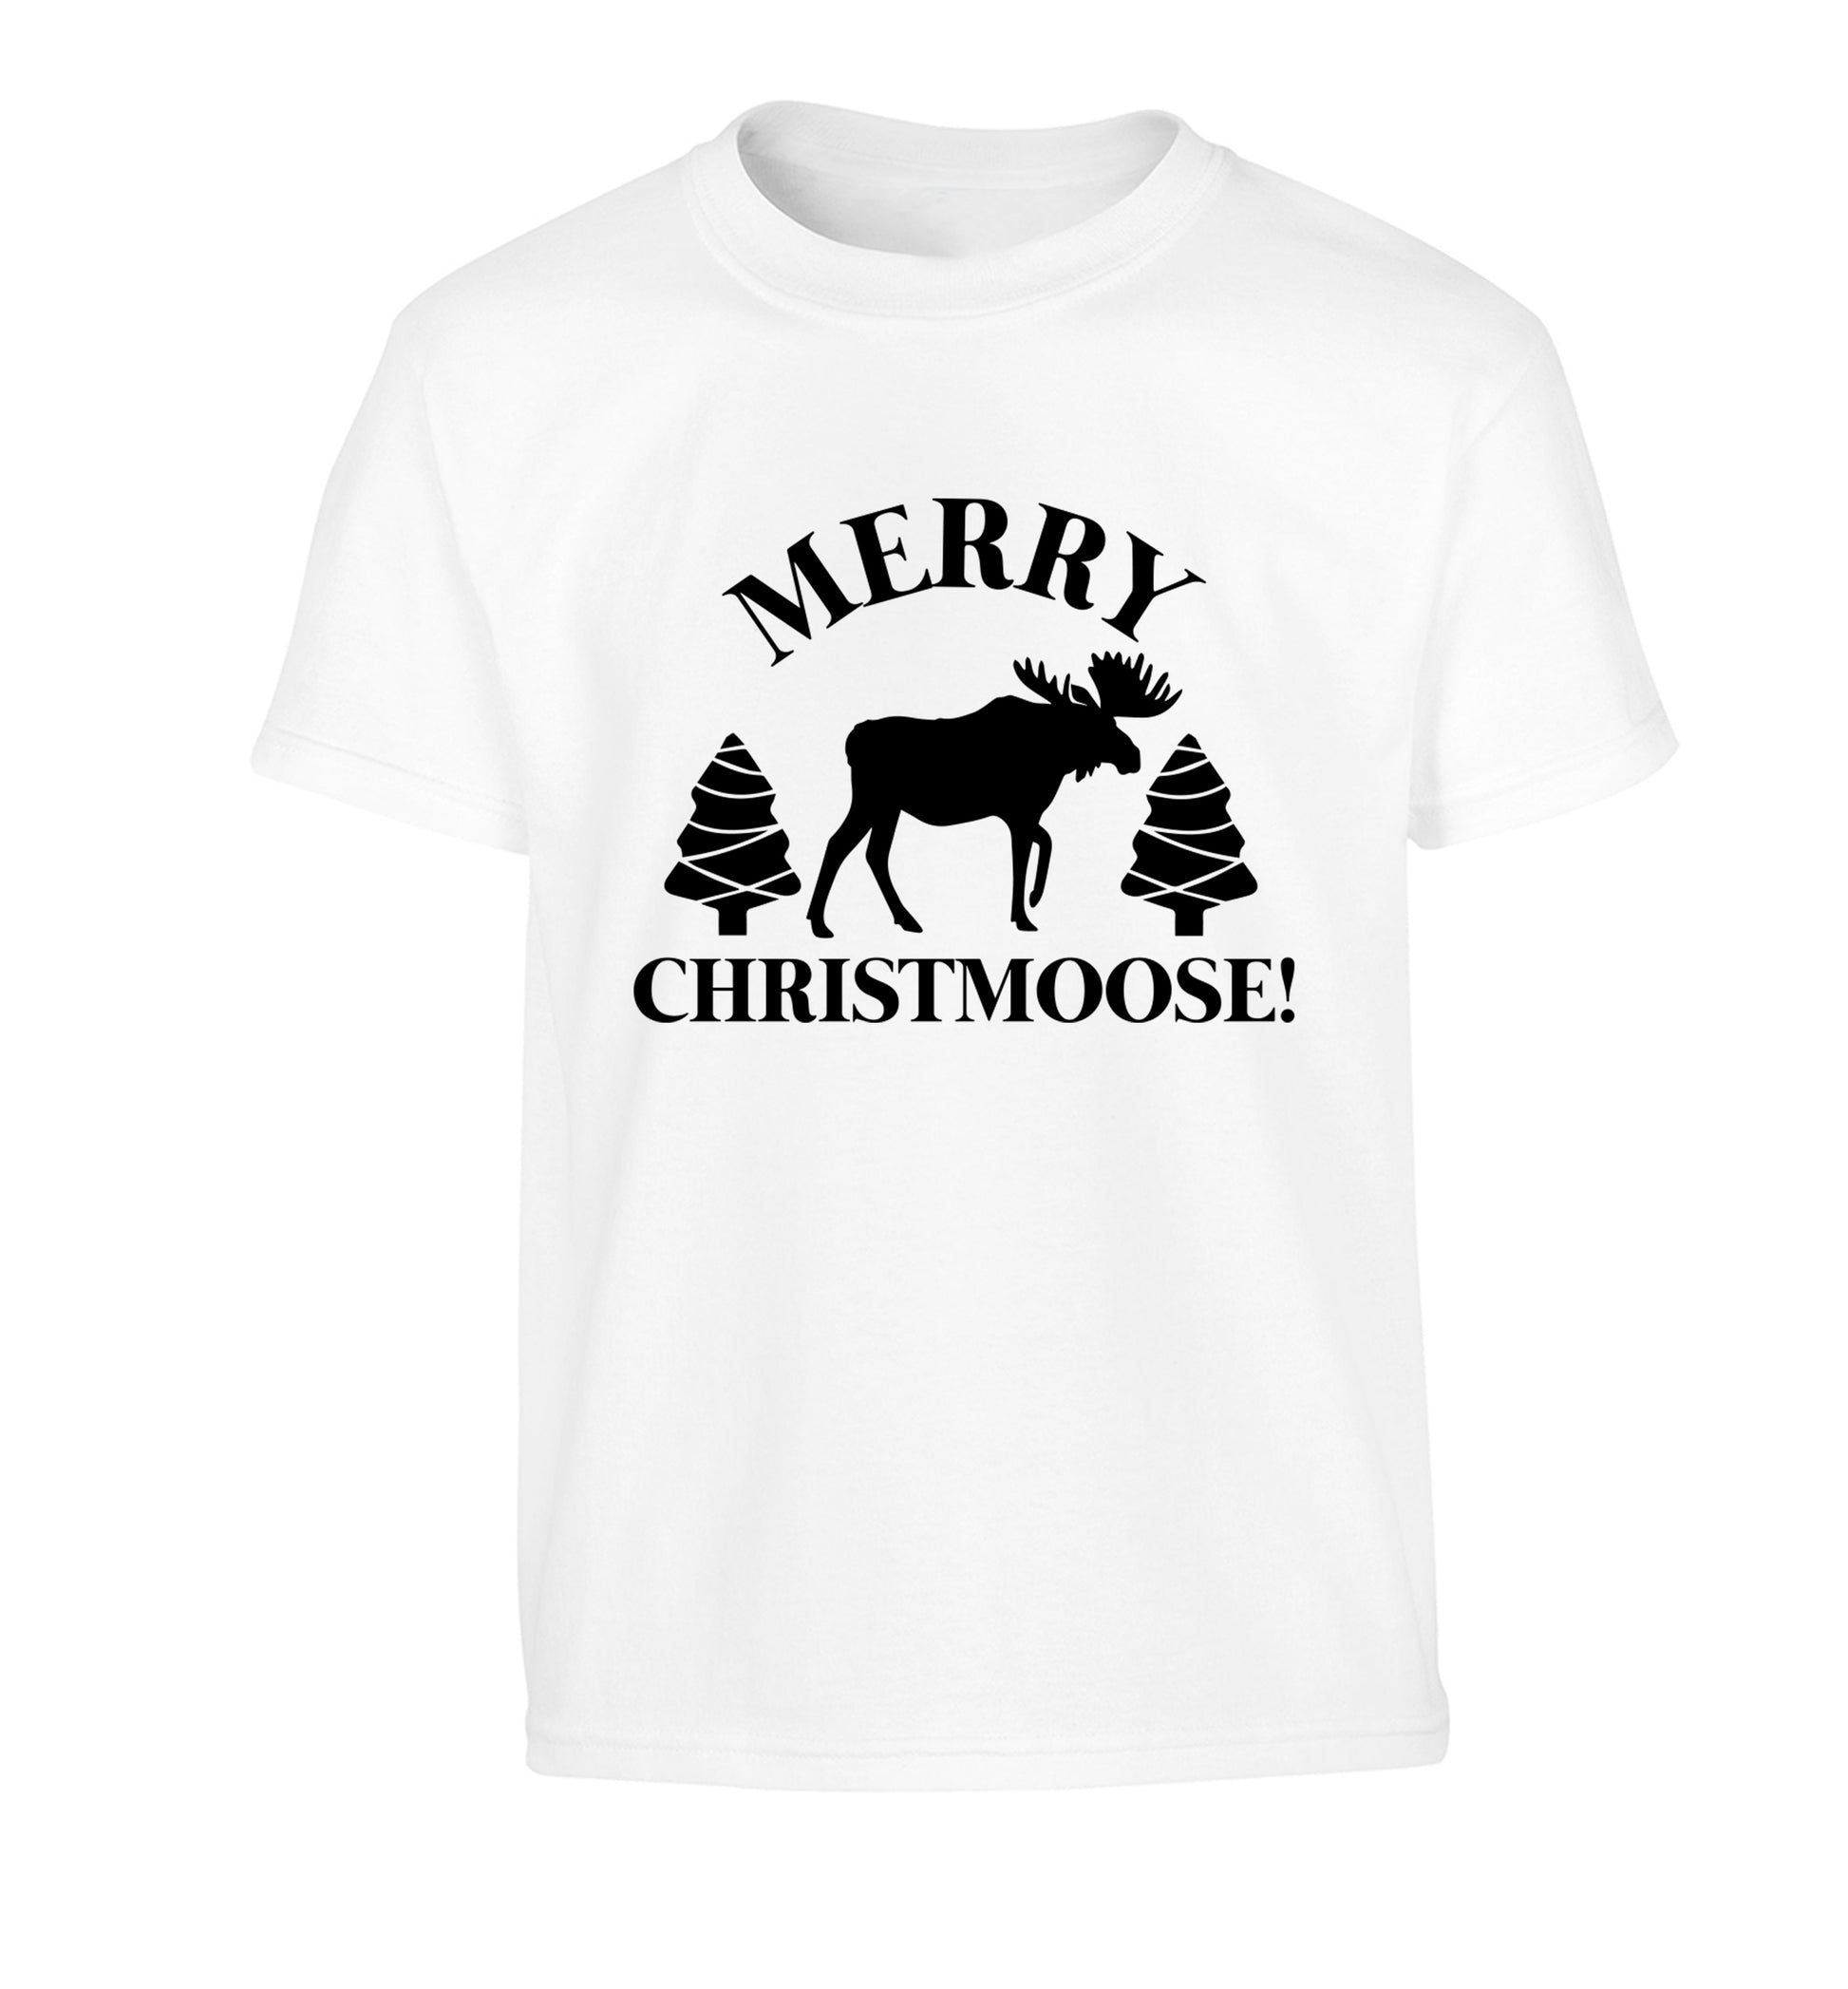 Merry Christmoose Children's white Tshirt 12-14 Years